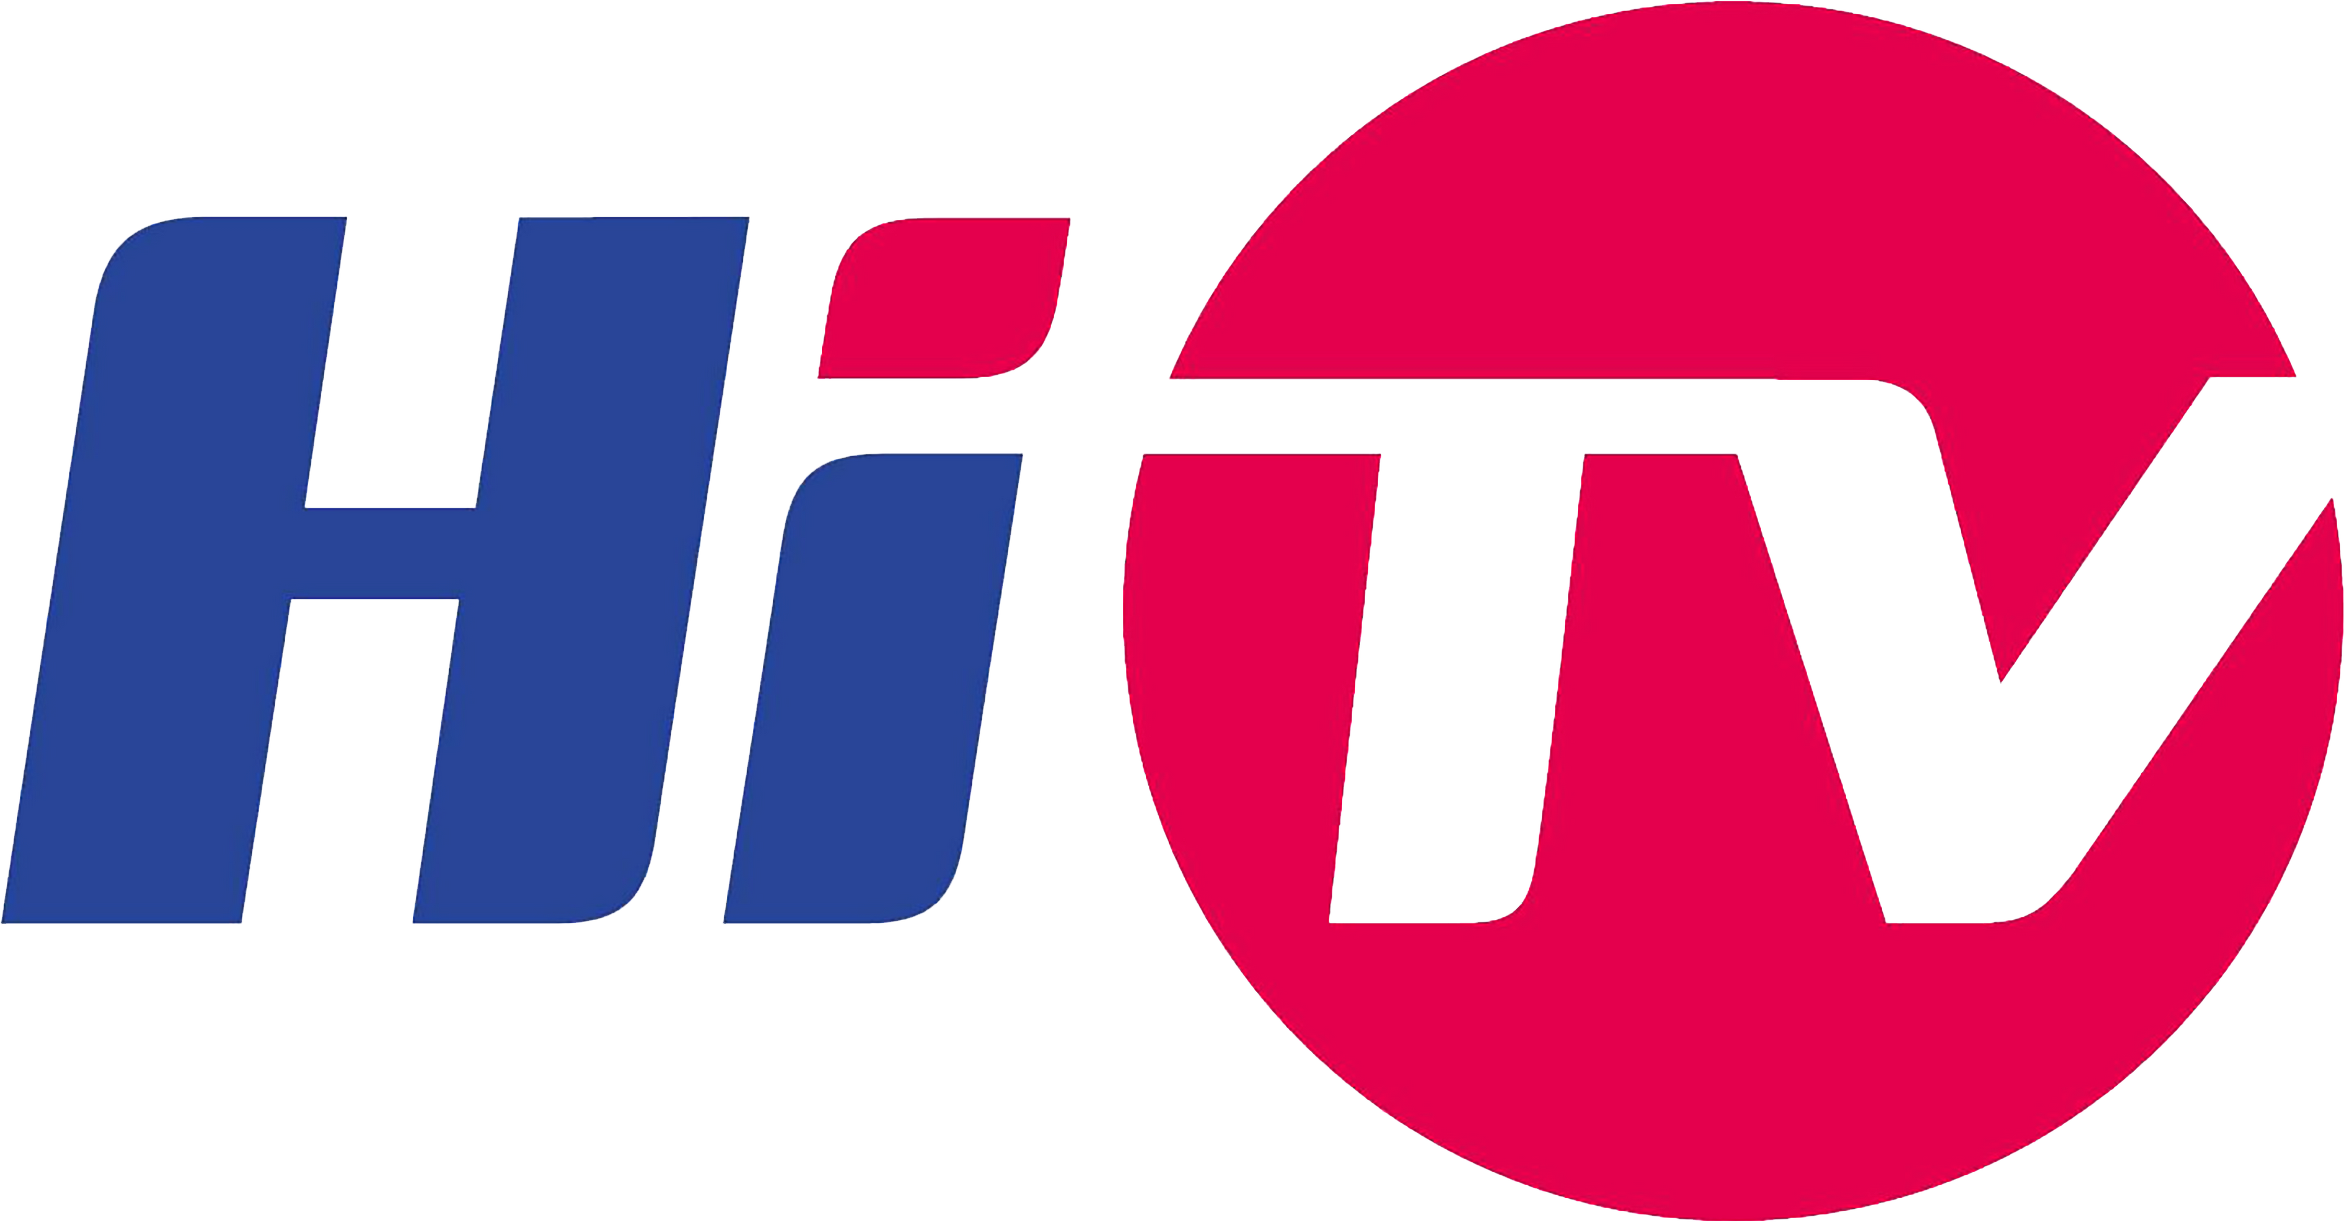 Viettel TV - HiTV | Wikia Logos | Fandom